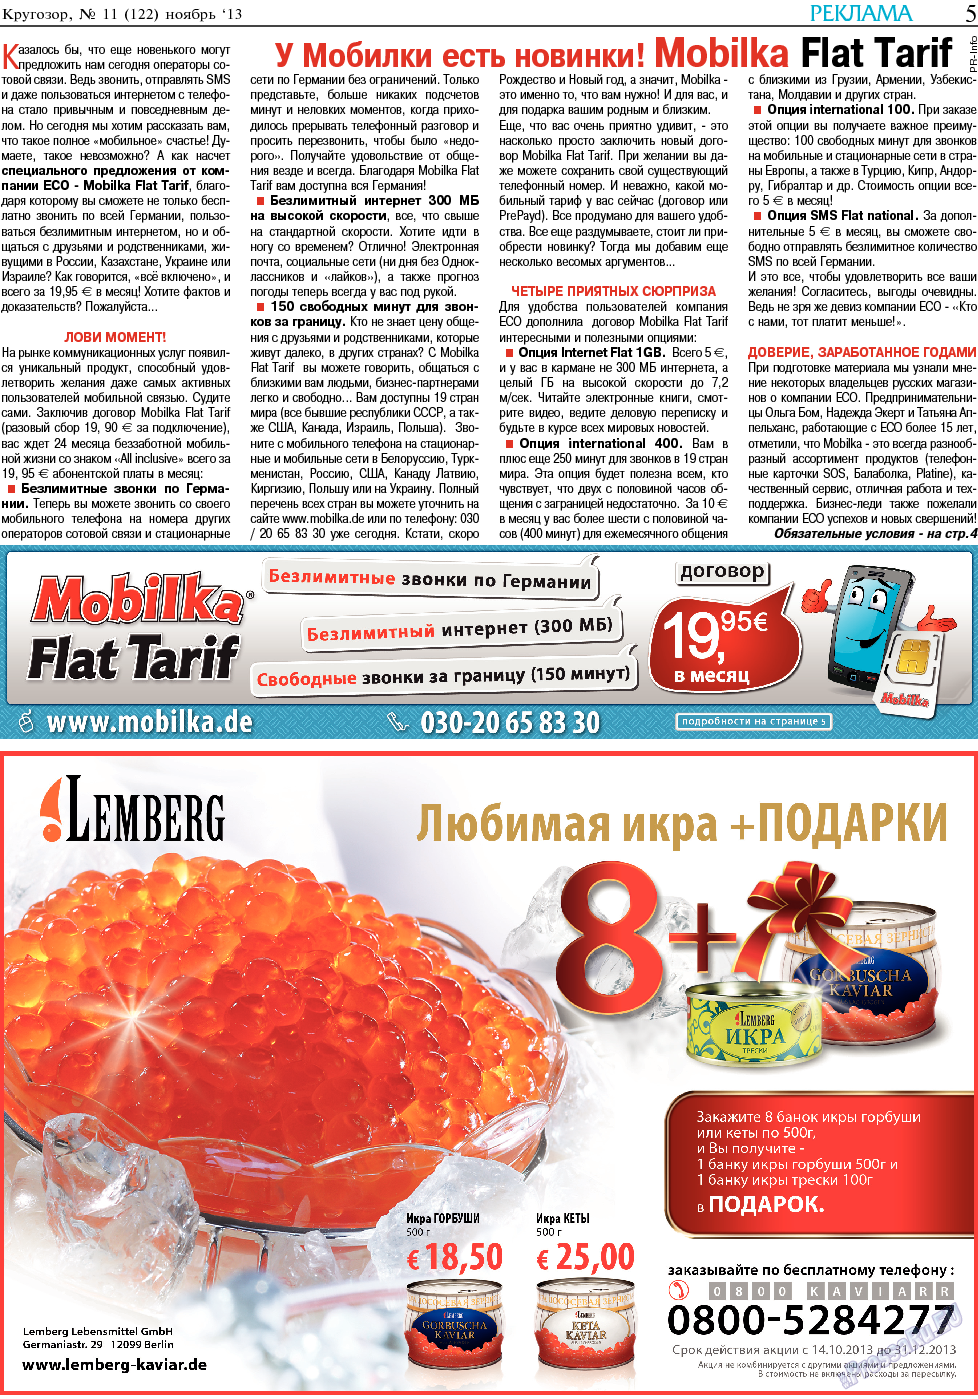 Кругозор, газета. 2013 №11 стр.5